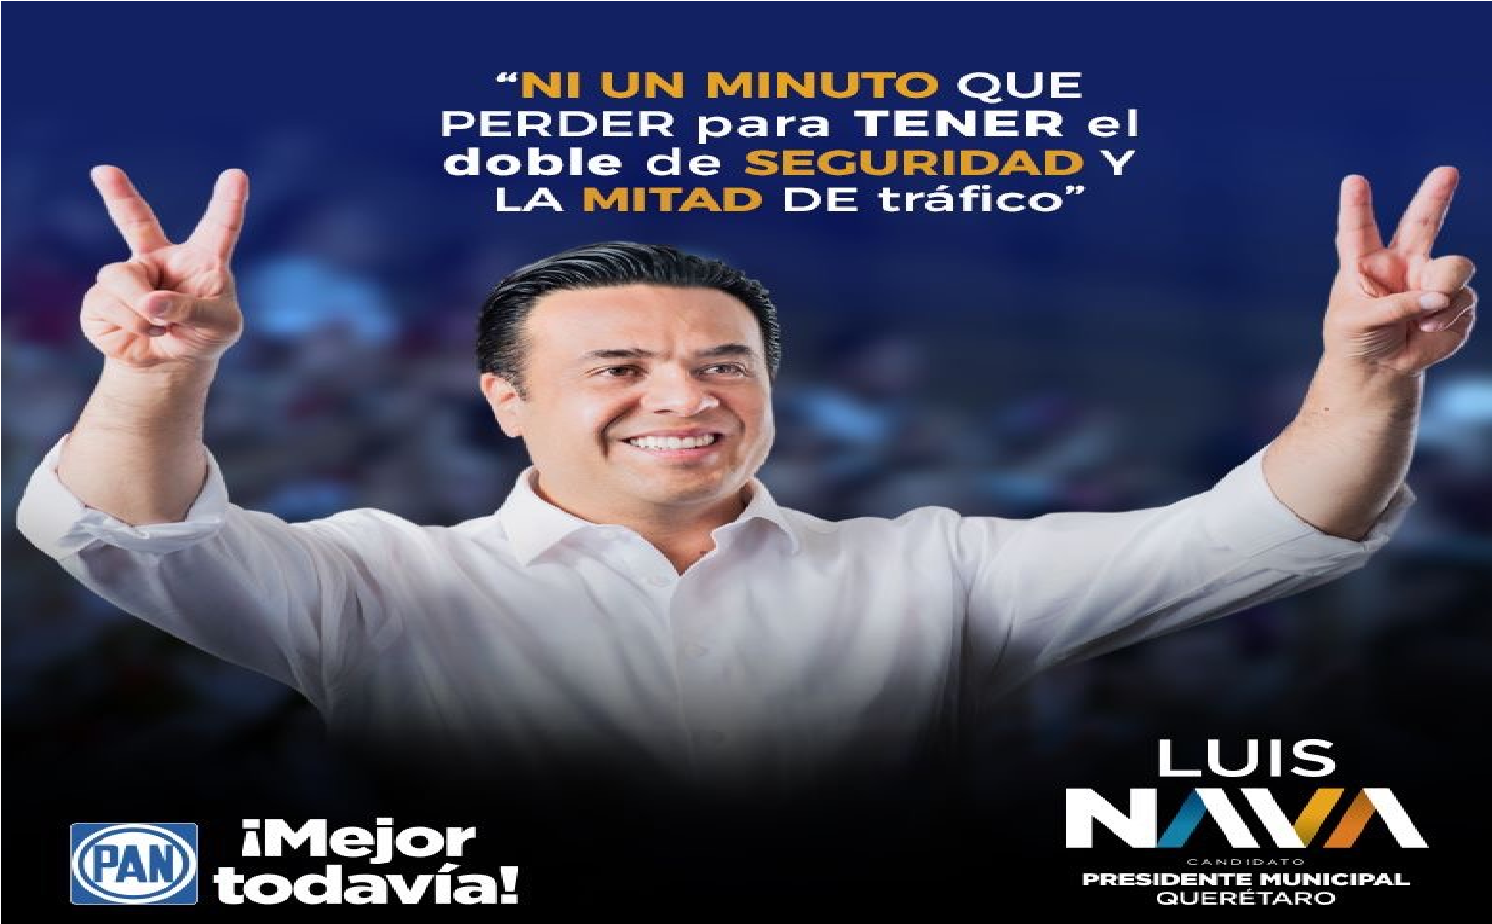 Luis Nava nulos resultados en Movilidad y Seguridad, busca reelegirse como alcalde de Querétaro, ¿le darías otra vez tu voto?